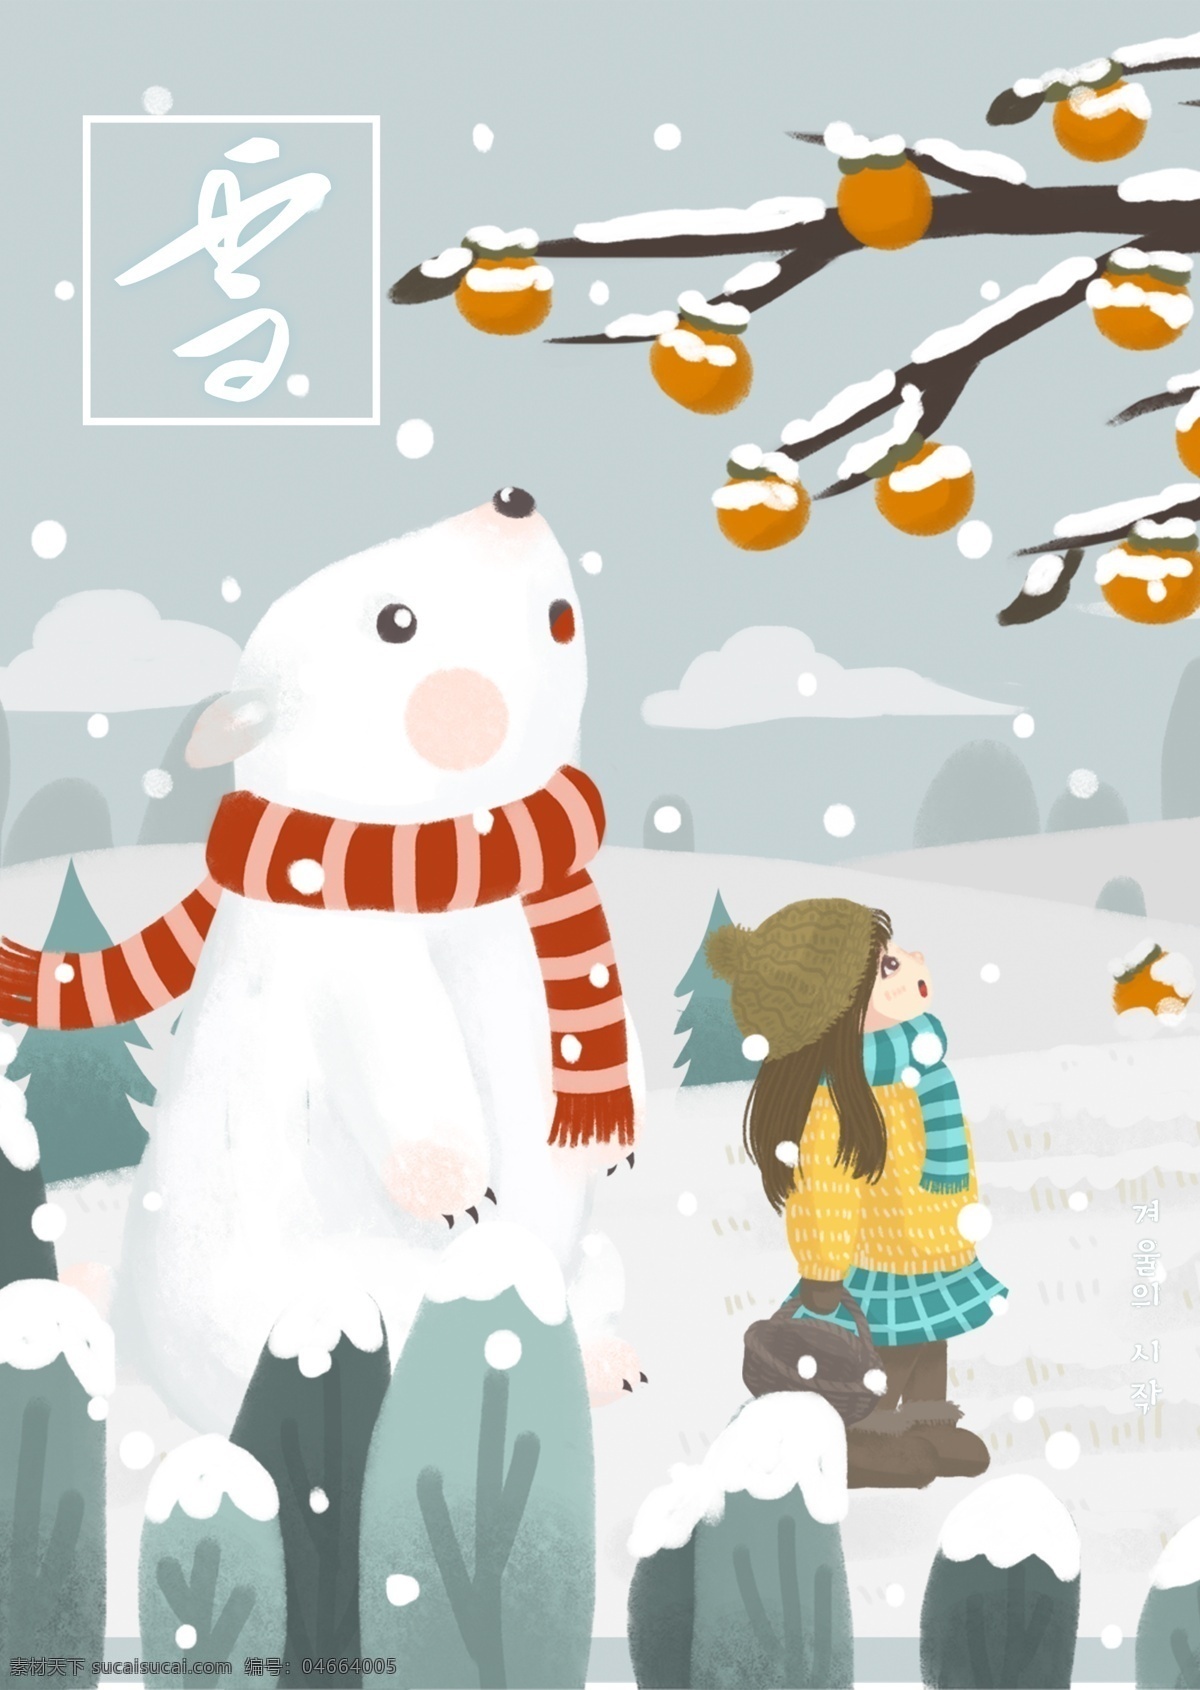 颜色 墨水 冬天 雪人 海报 雪景 娃娃 围巾 柿子 雪 花枝 遥远 中文 冰雪 覆盖 景观 松树 灰色 白色 墨 简单